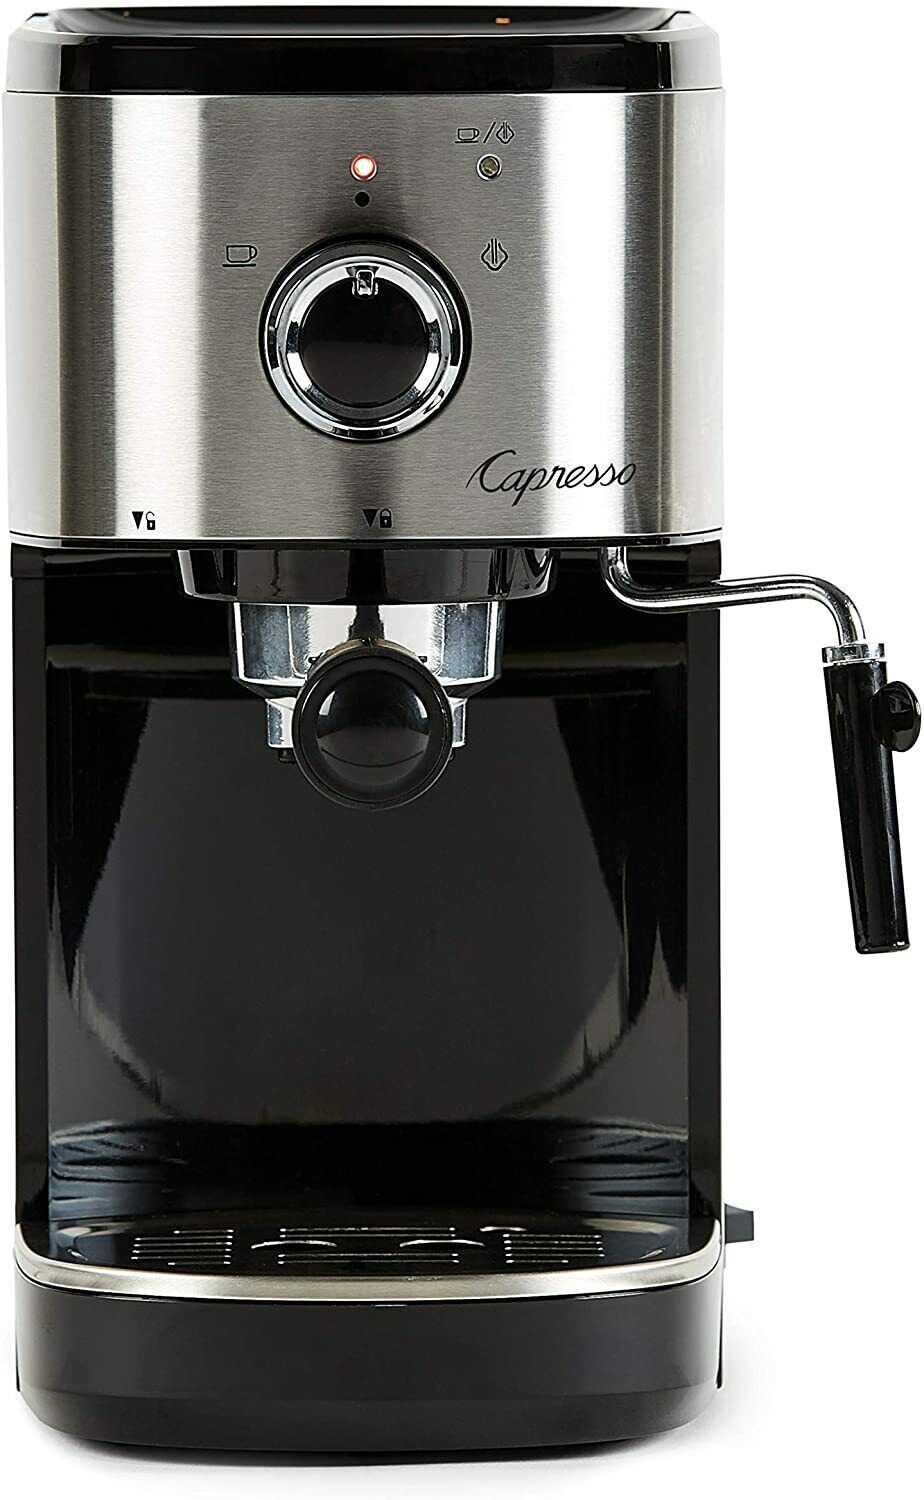 Capresso EC Select 15 Bars Espresso & Cappuccino Machine - $169.99